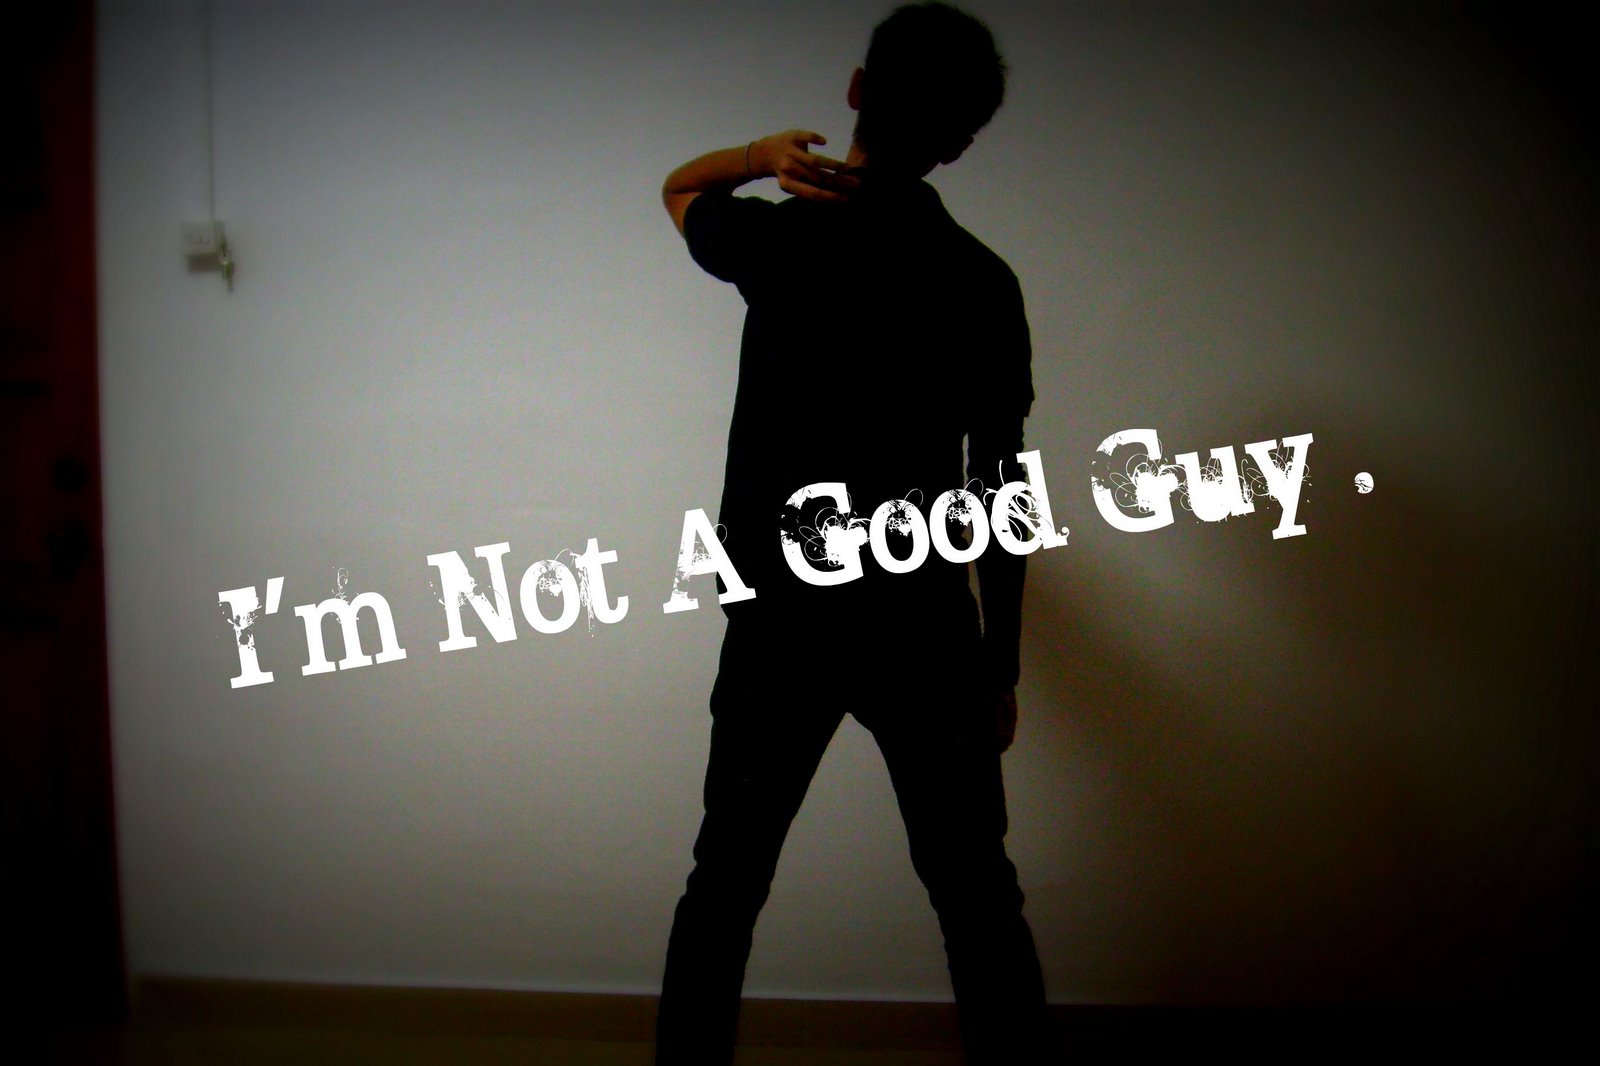 [I'm+Not+a+Good+Guy+.+.jpg]